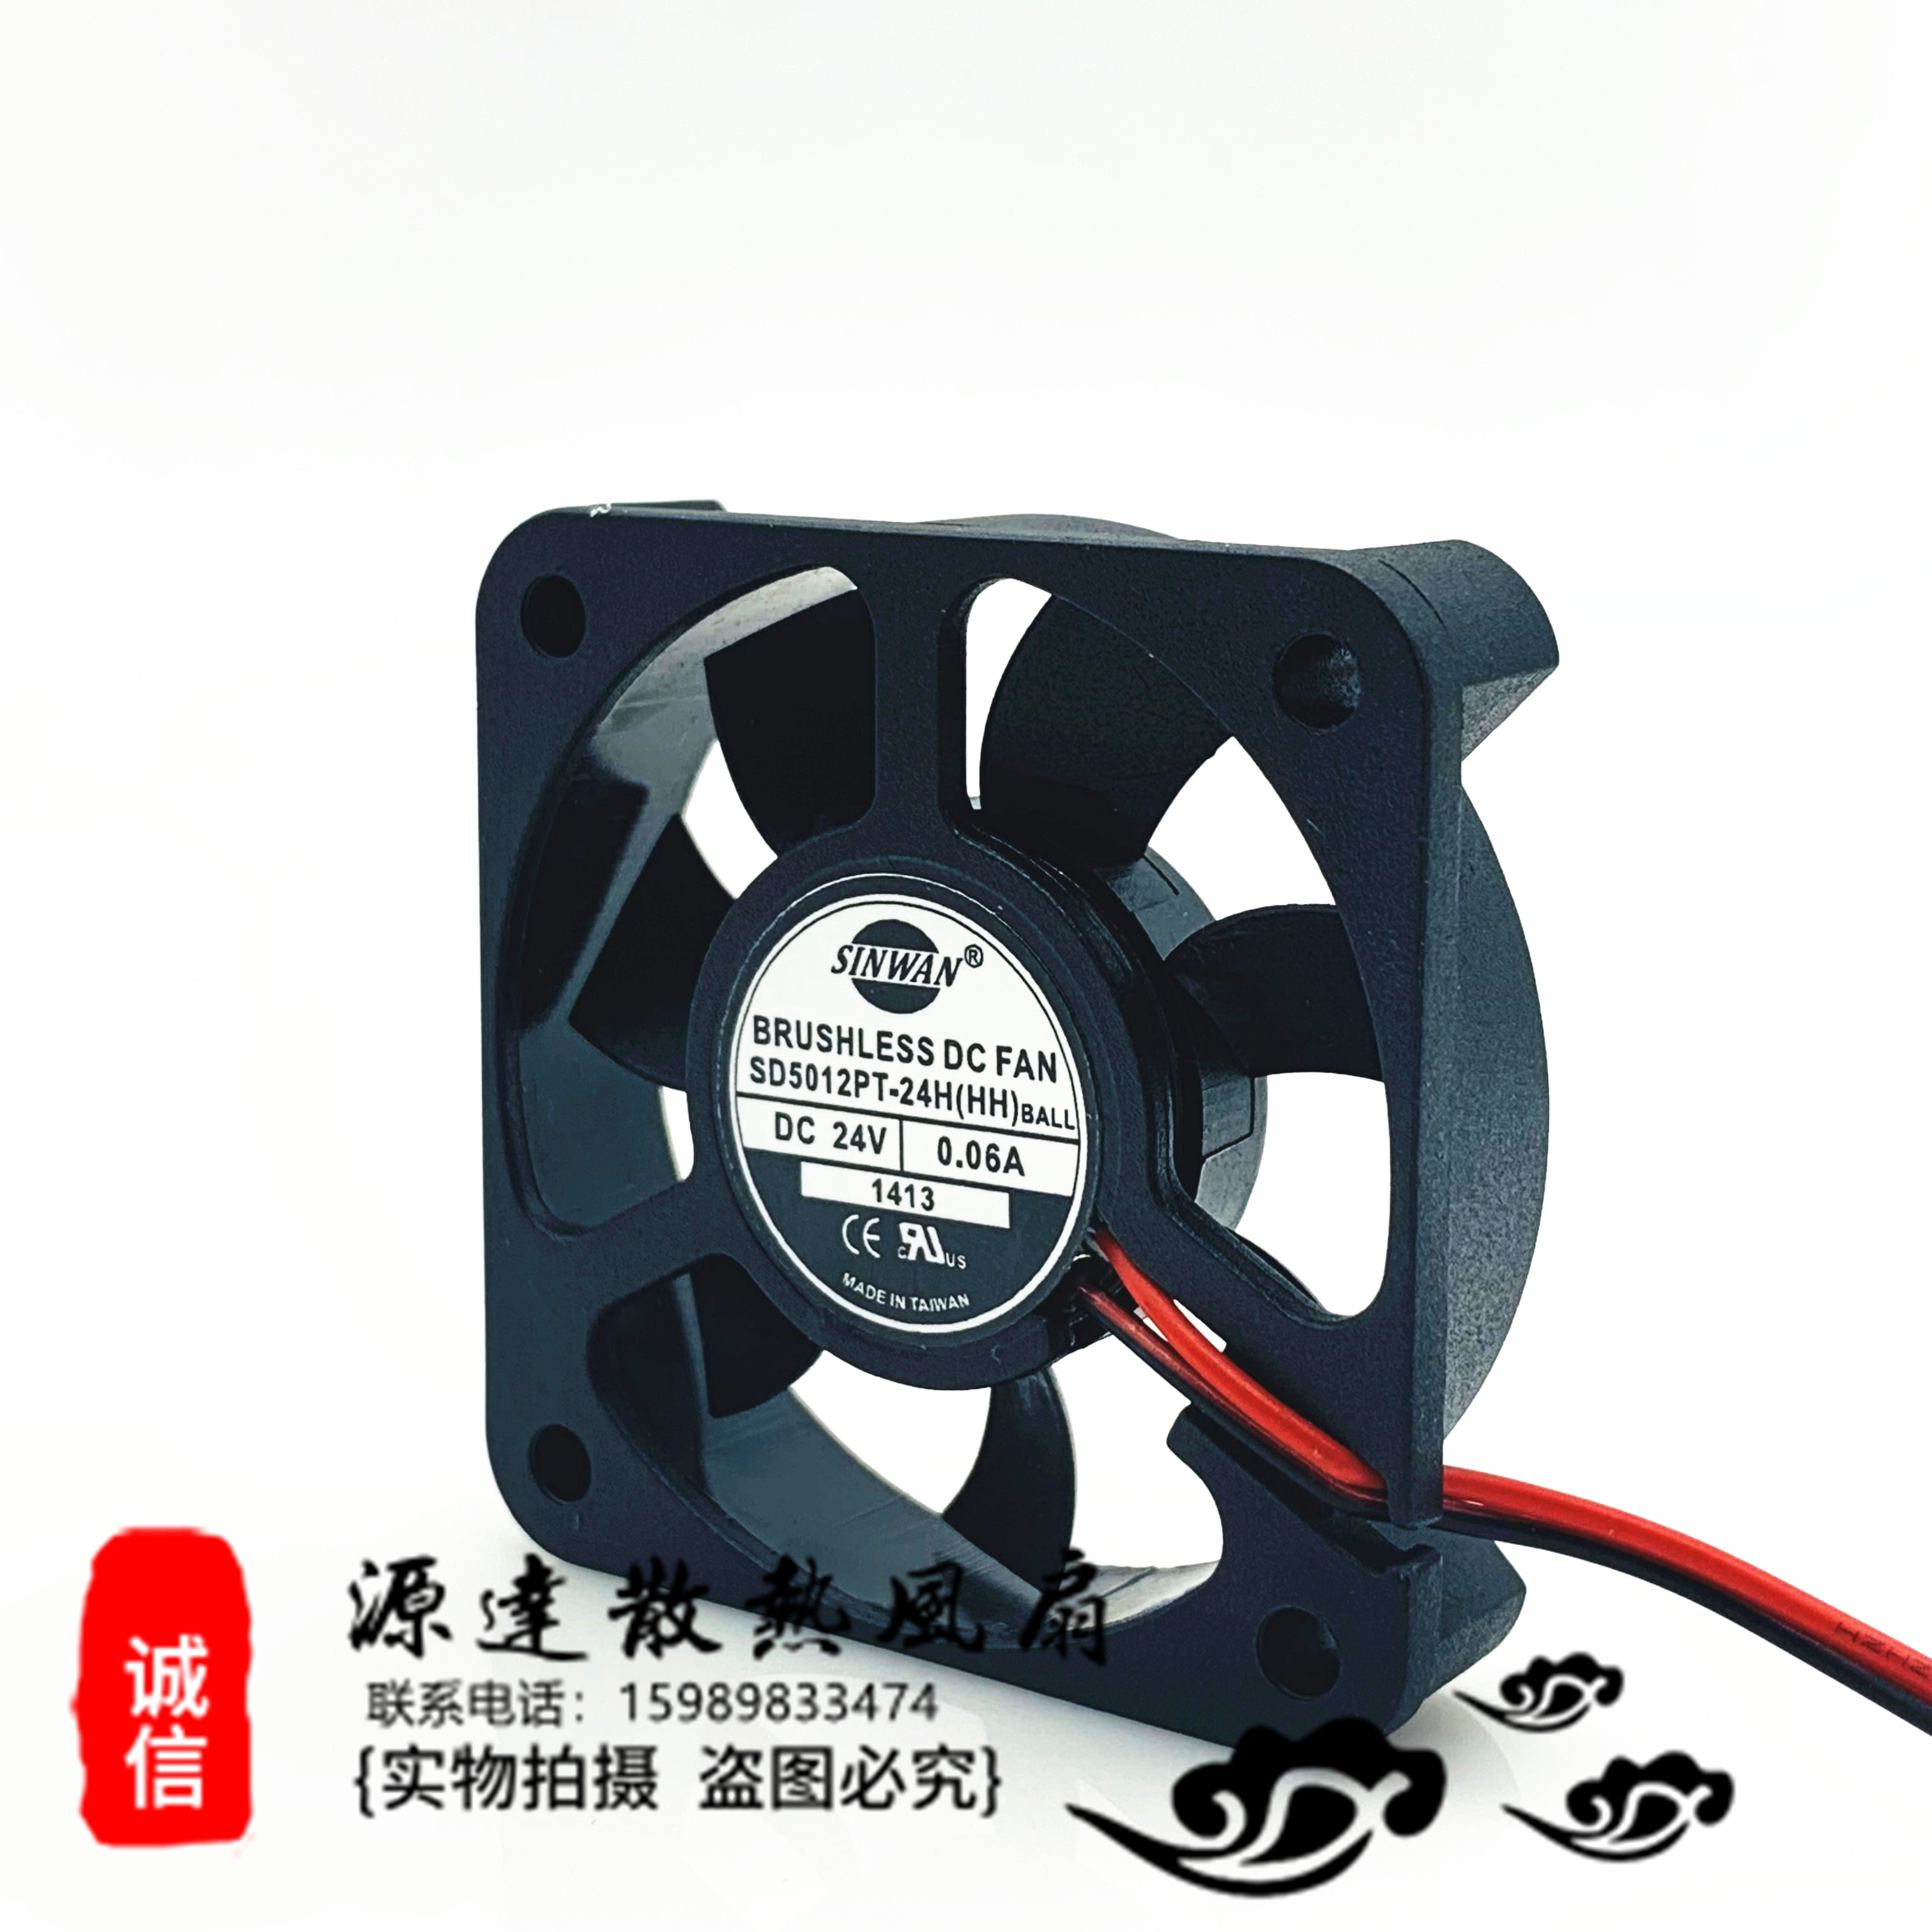 全新台湾SINWAN SD5012PT-24H 5cm5012 24V 0.06A变频器风扇